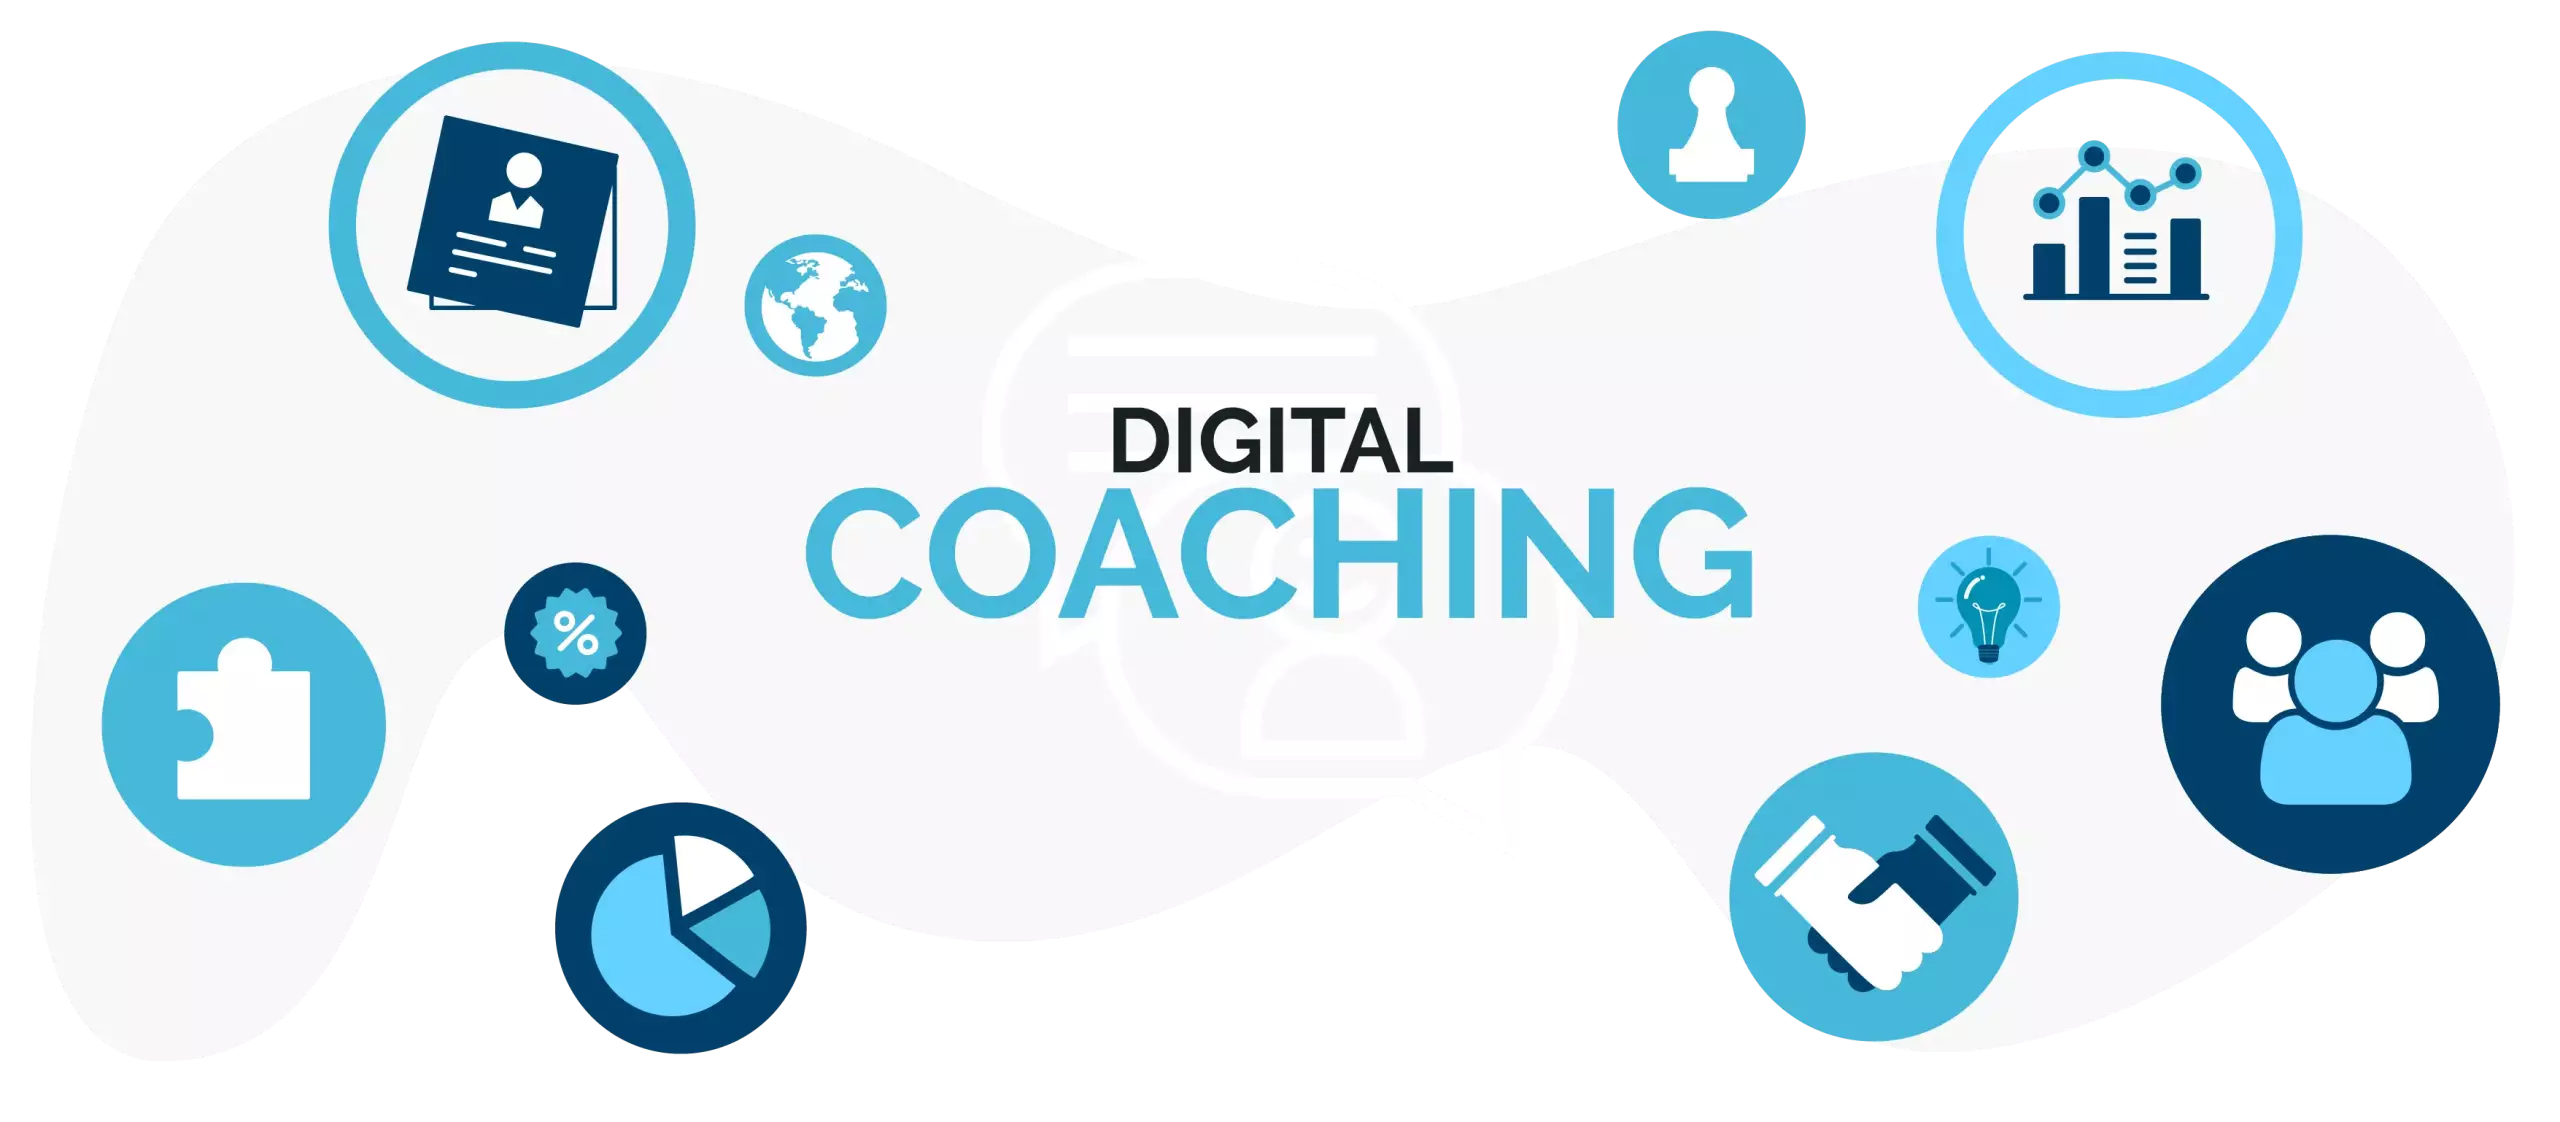 Digital Coaching